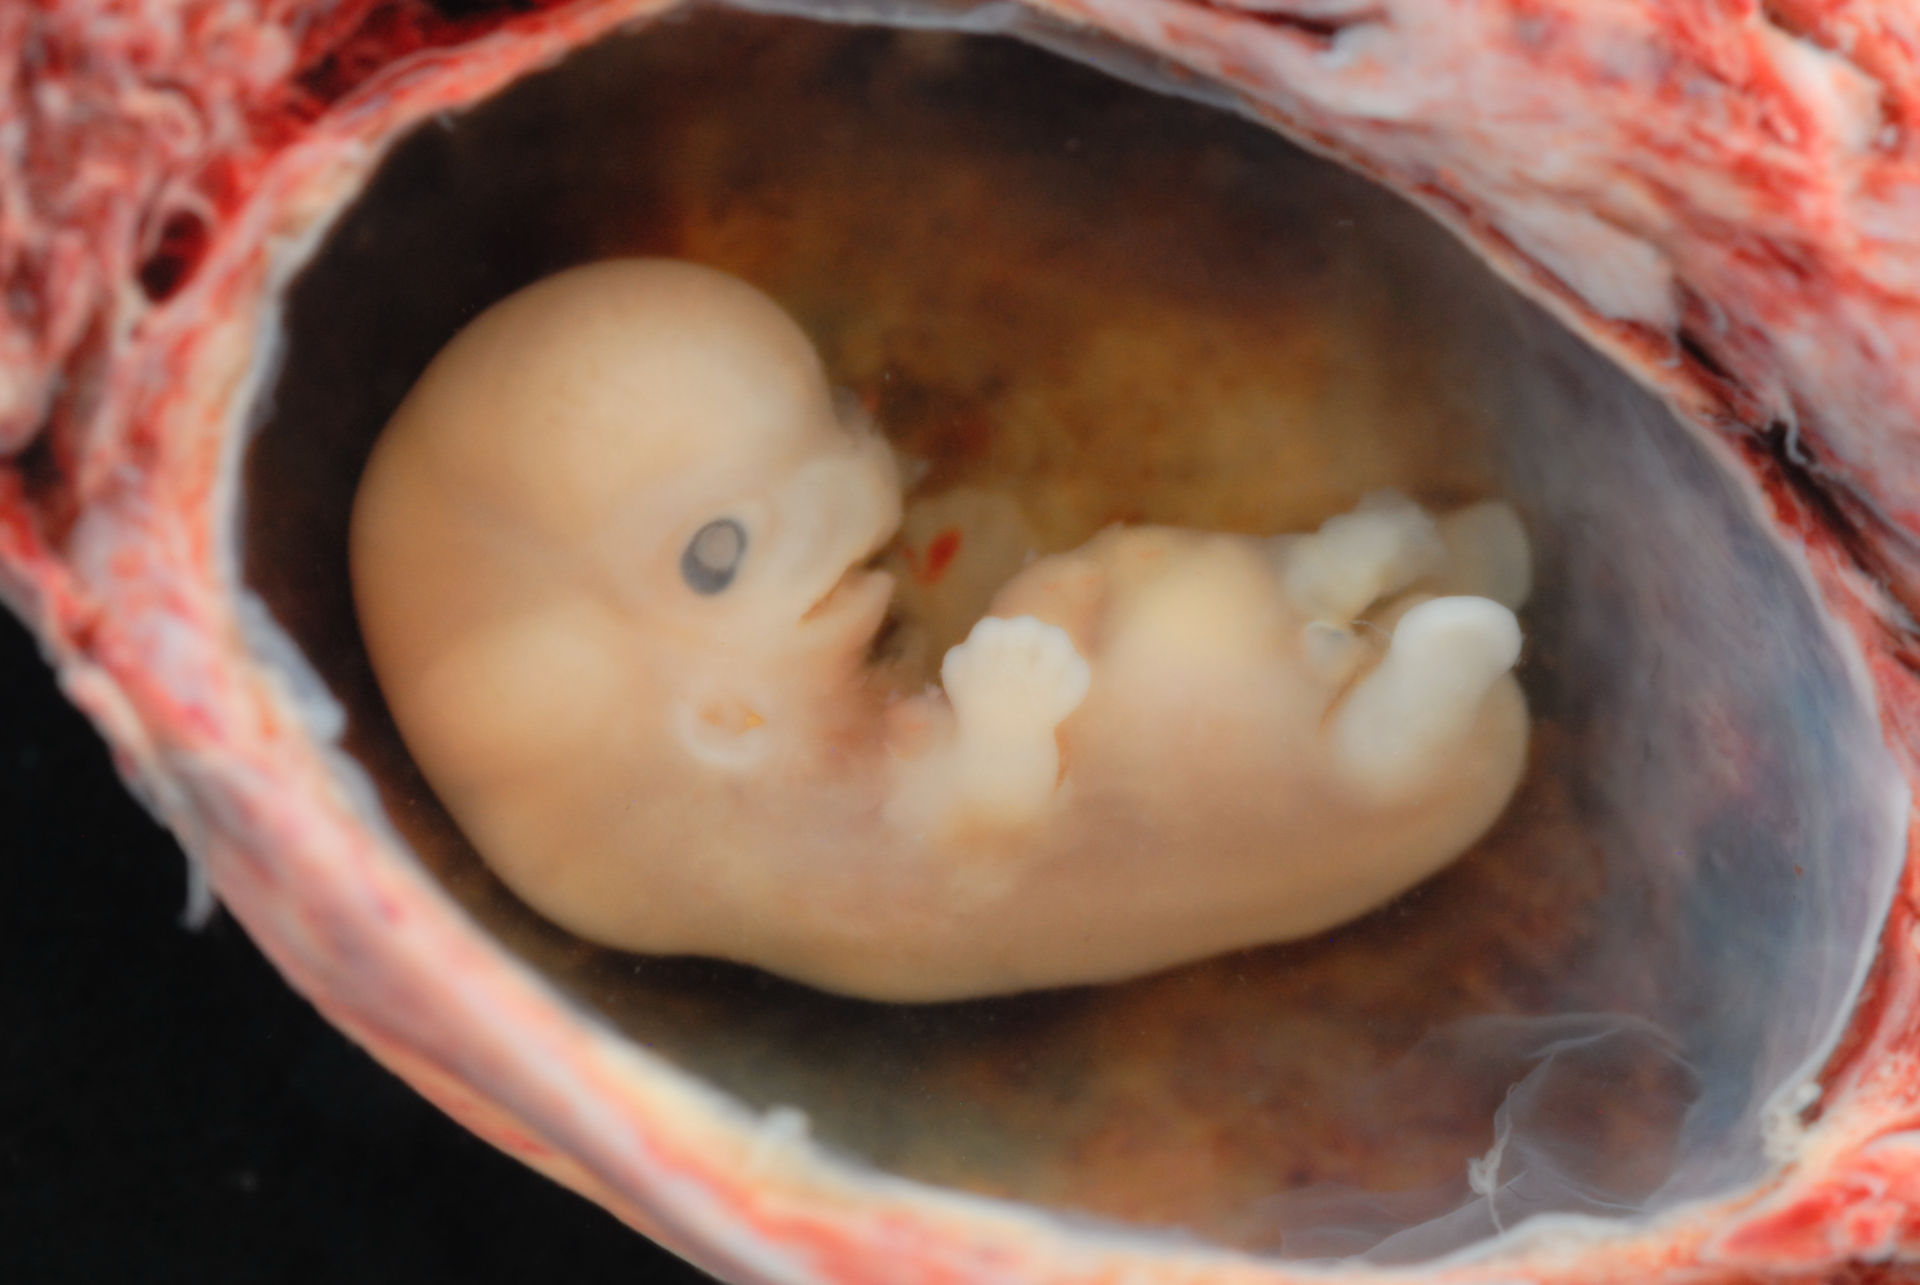 Embyro (6 weeks estimated gestational age)